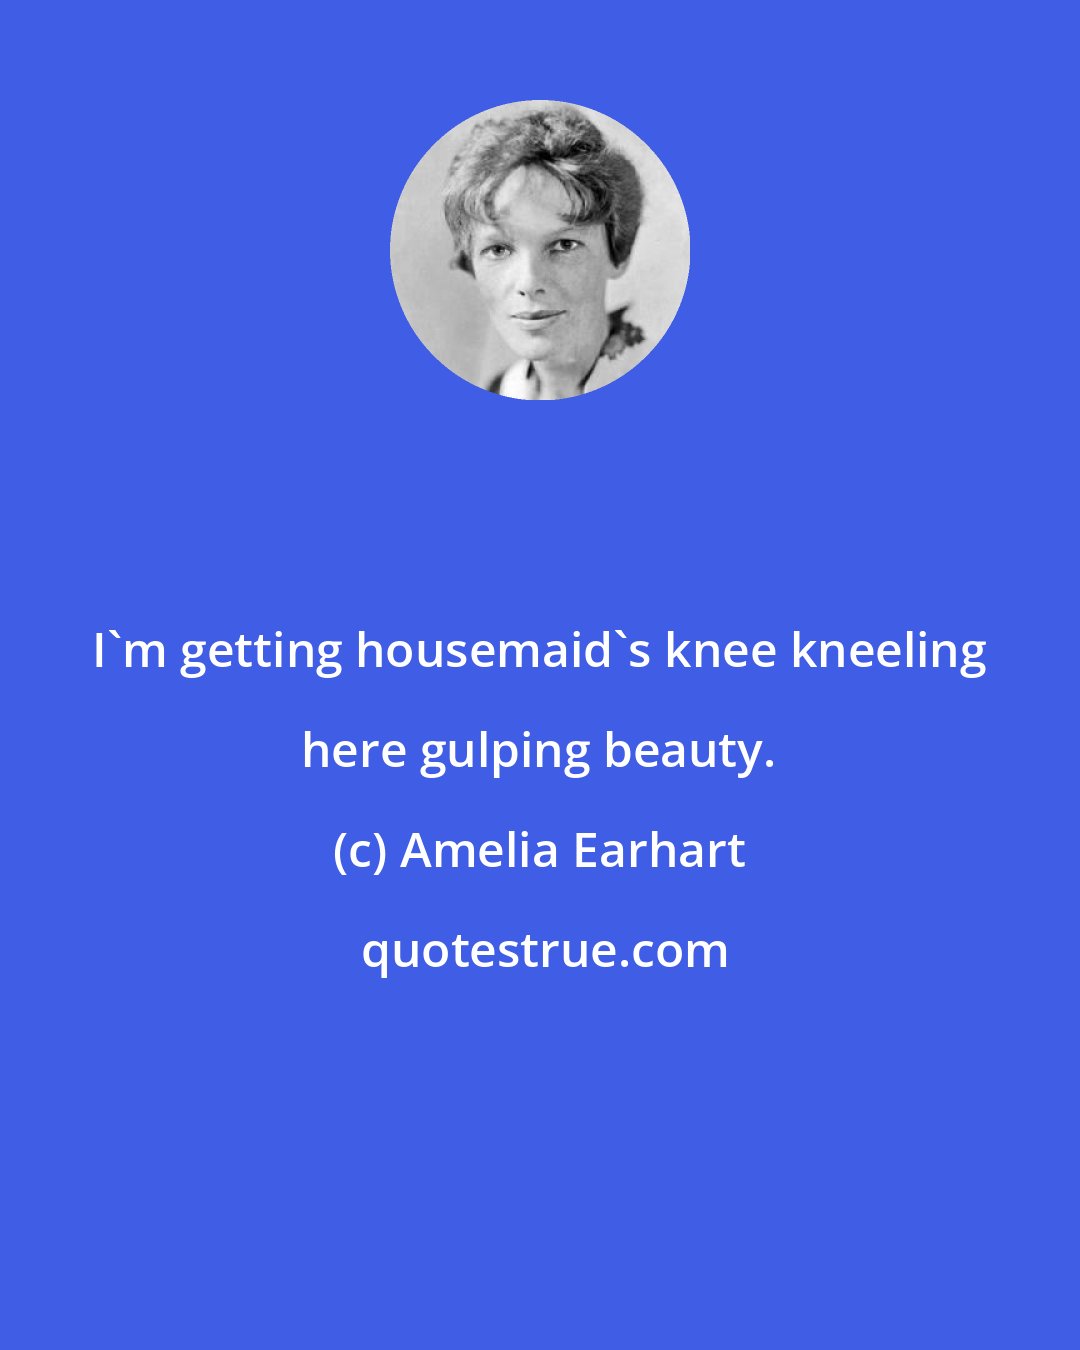 Amelia Earhart: I'm getting housemaid's knee kneeling here gulping beauty.